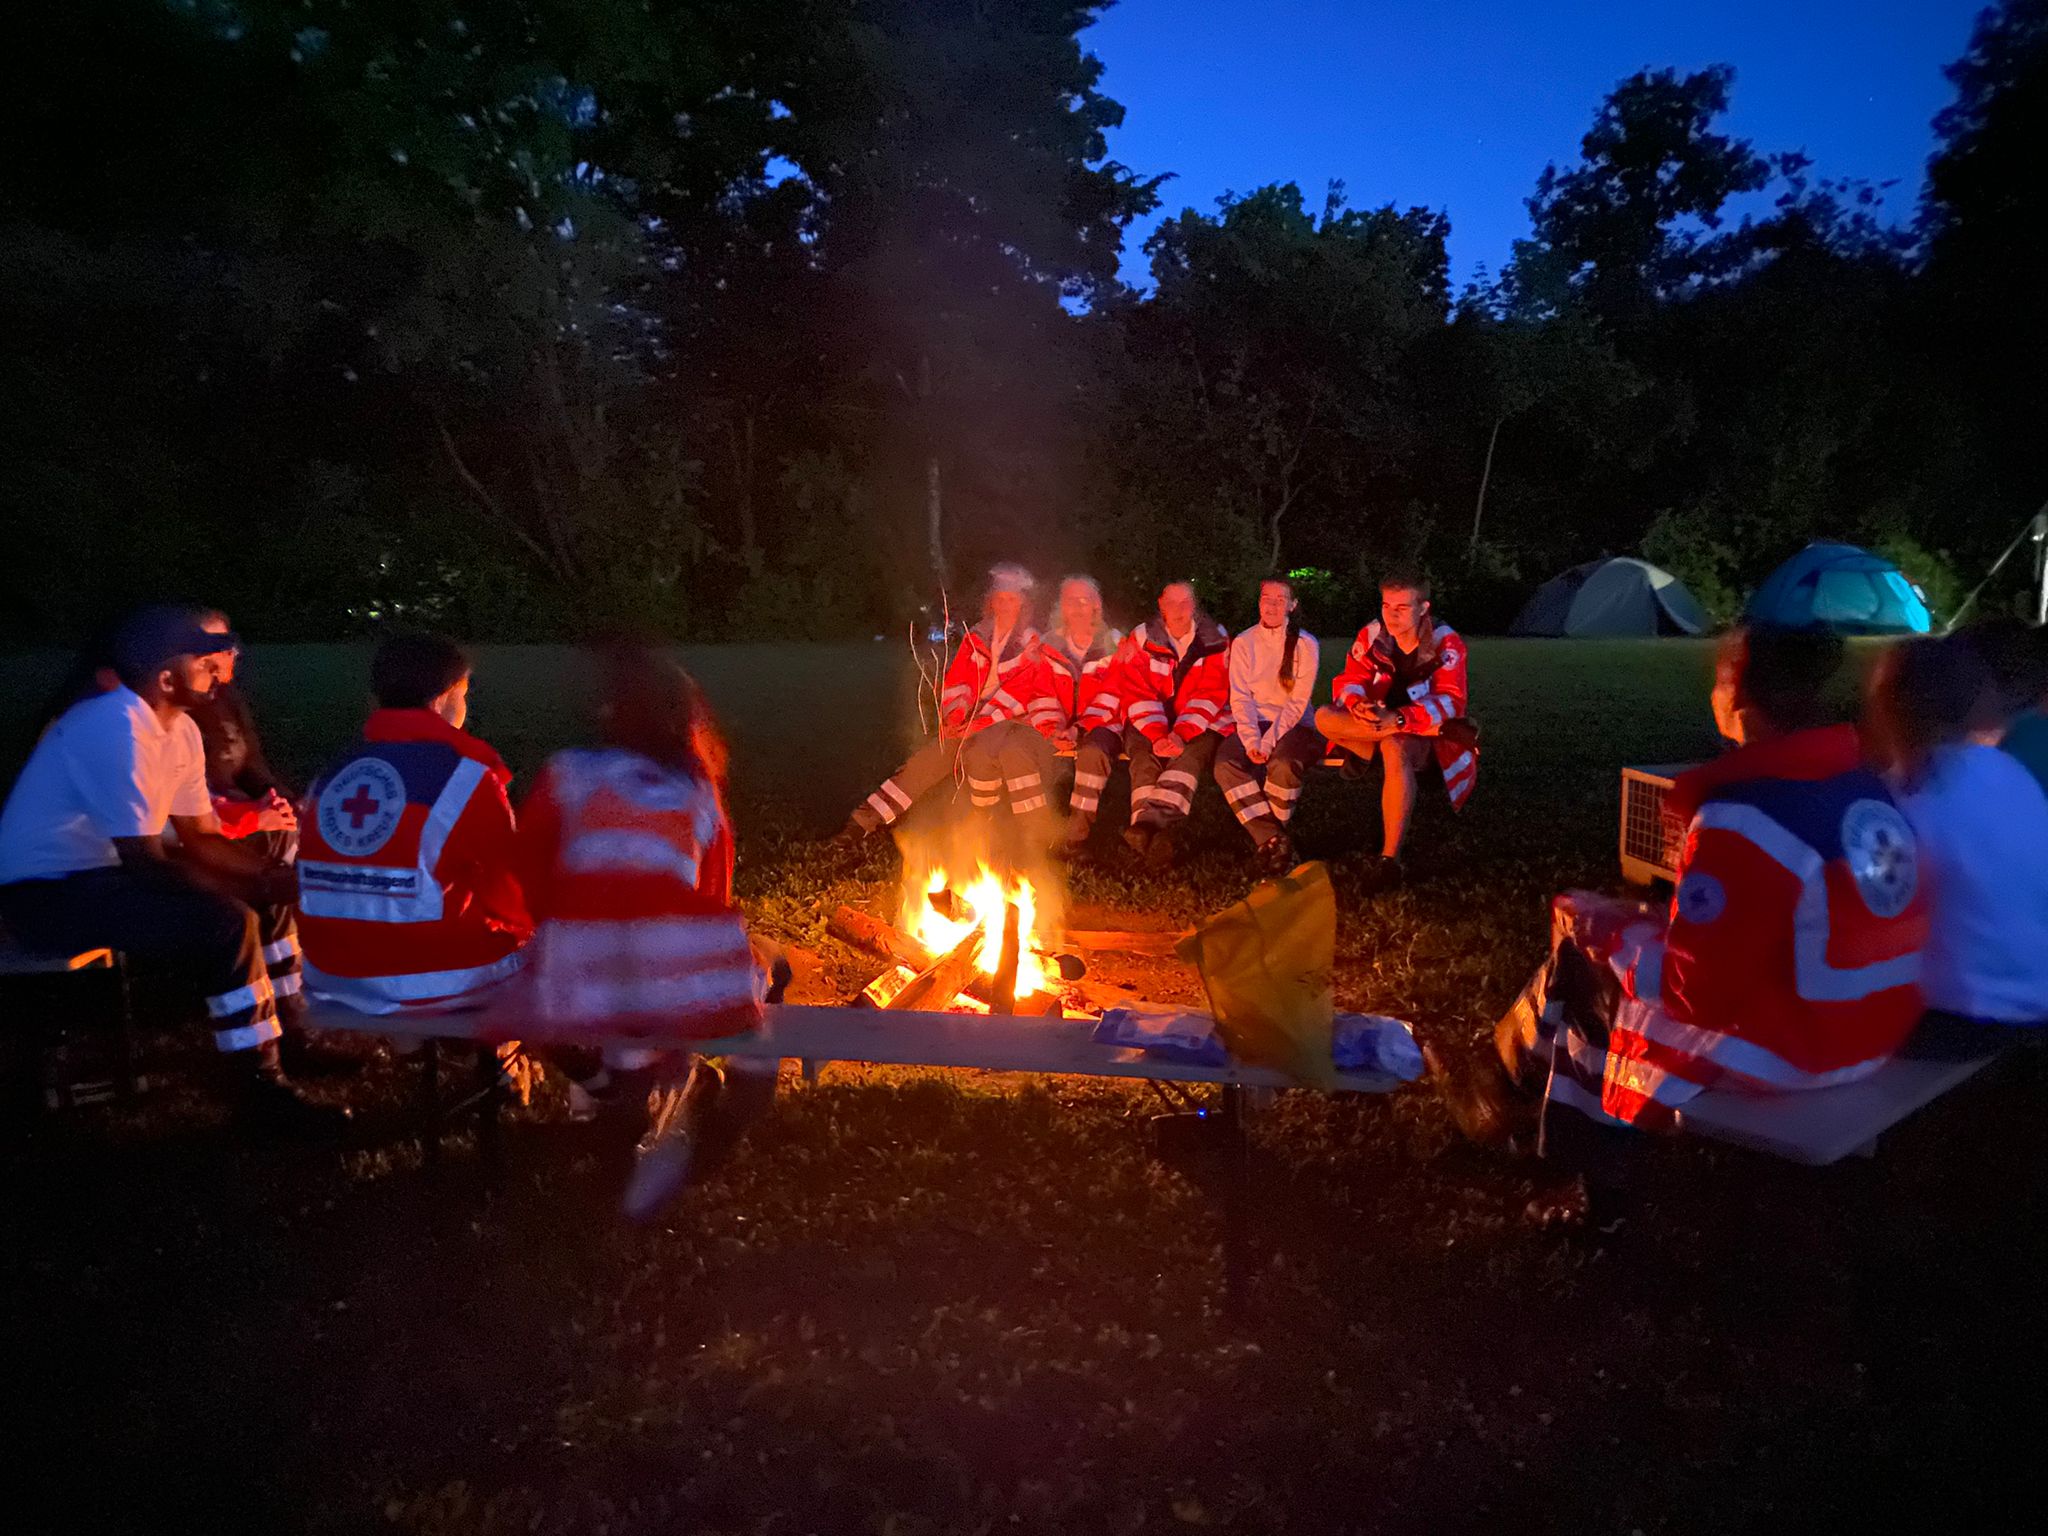 Jugendliche und Betreuer in Rotkreuz-Jacken sitzen um ein Lagerfeuer. Im Hintergrund sind vor Nachthimmel Laubbäume zu erkennen.